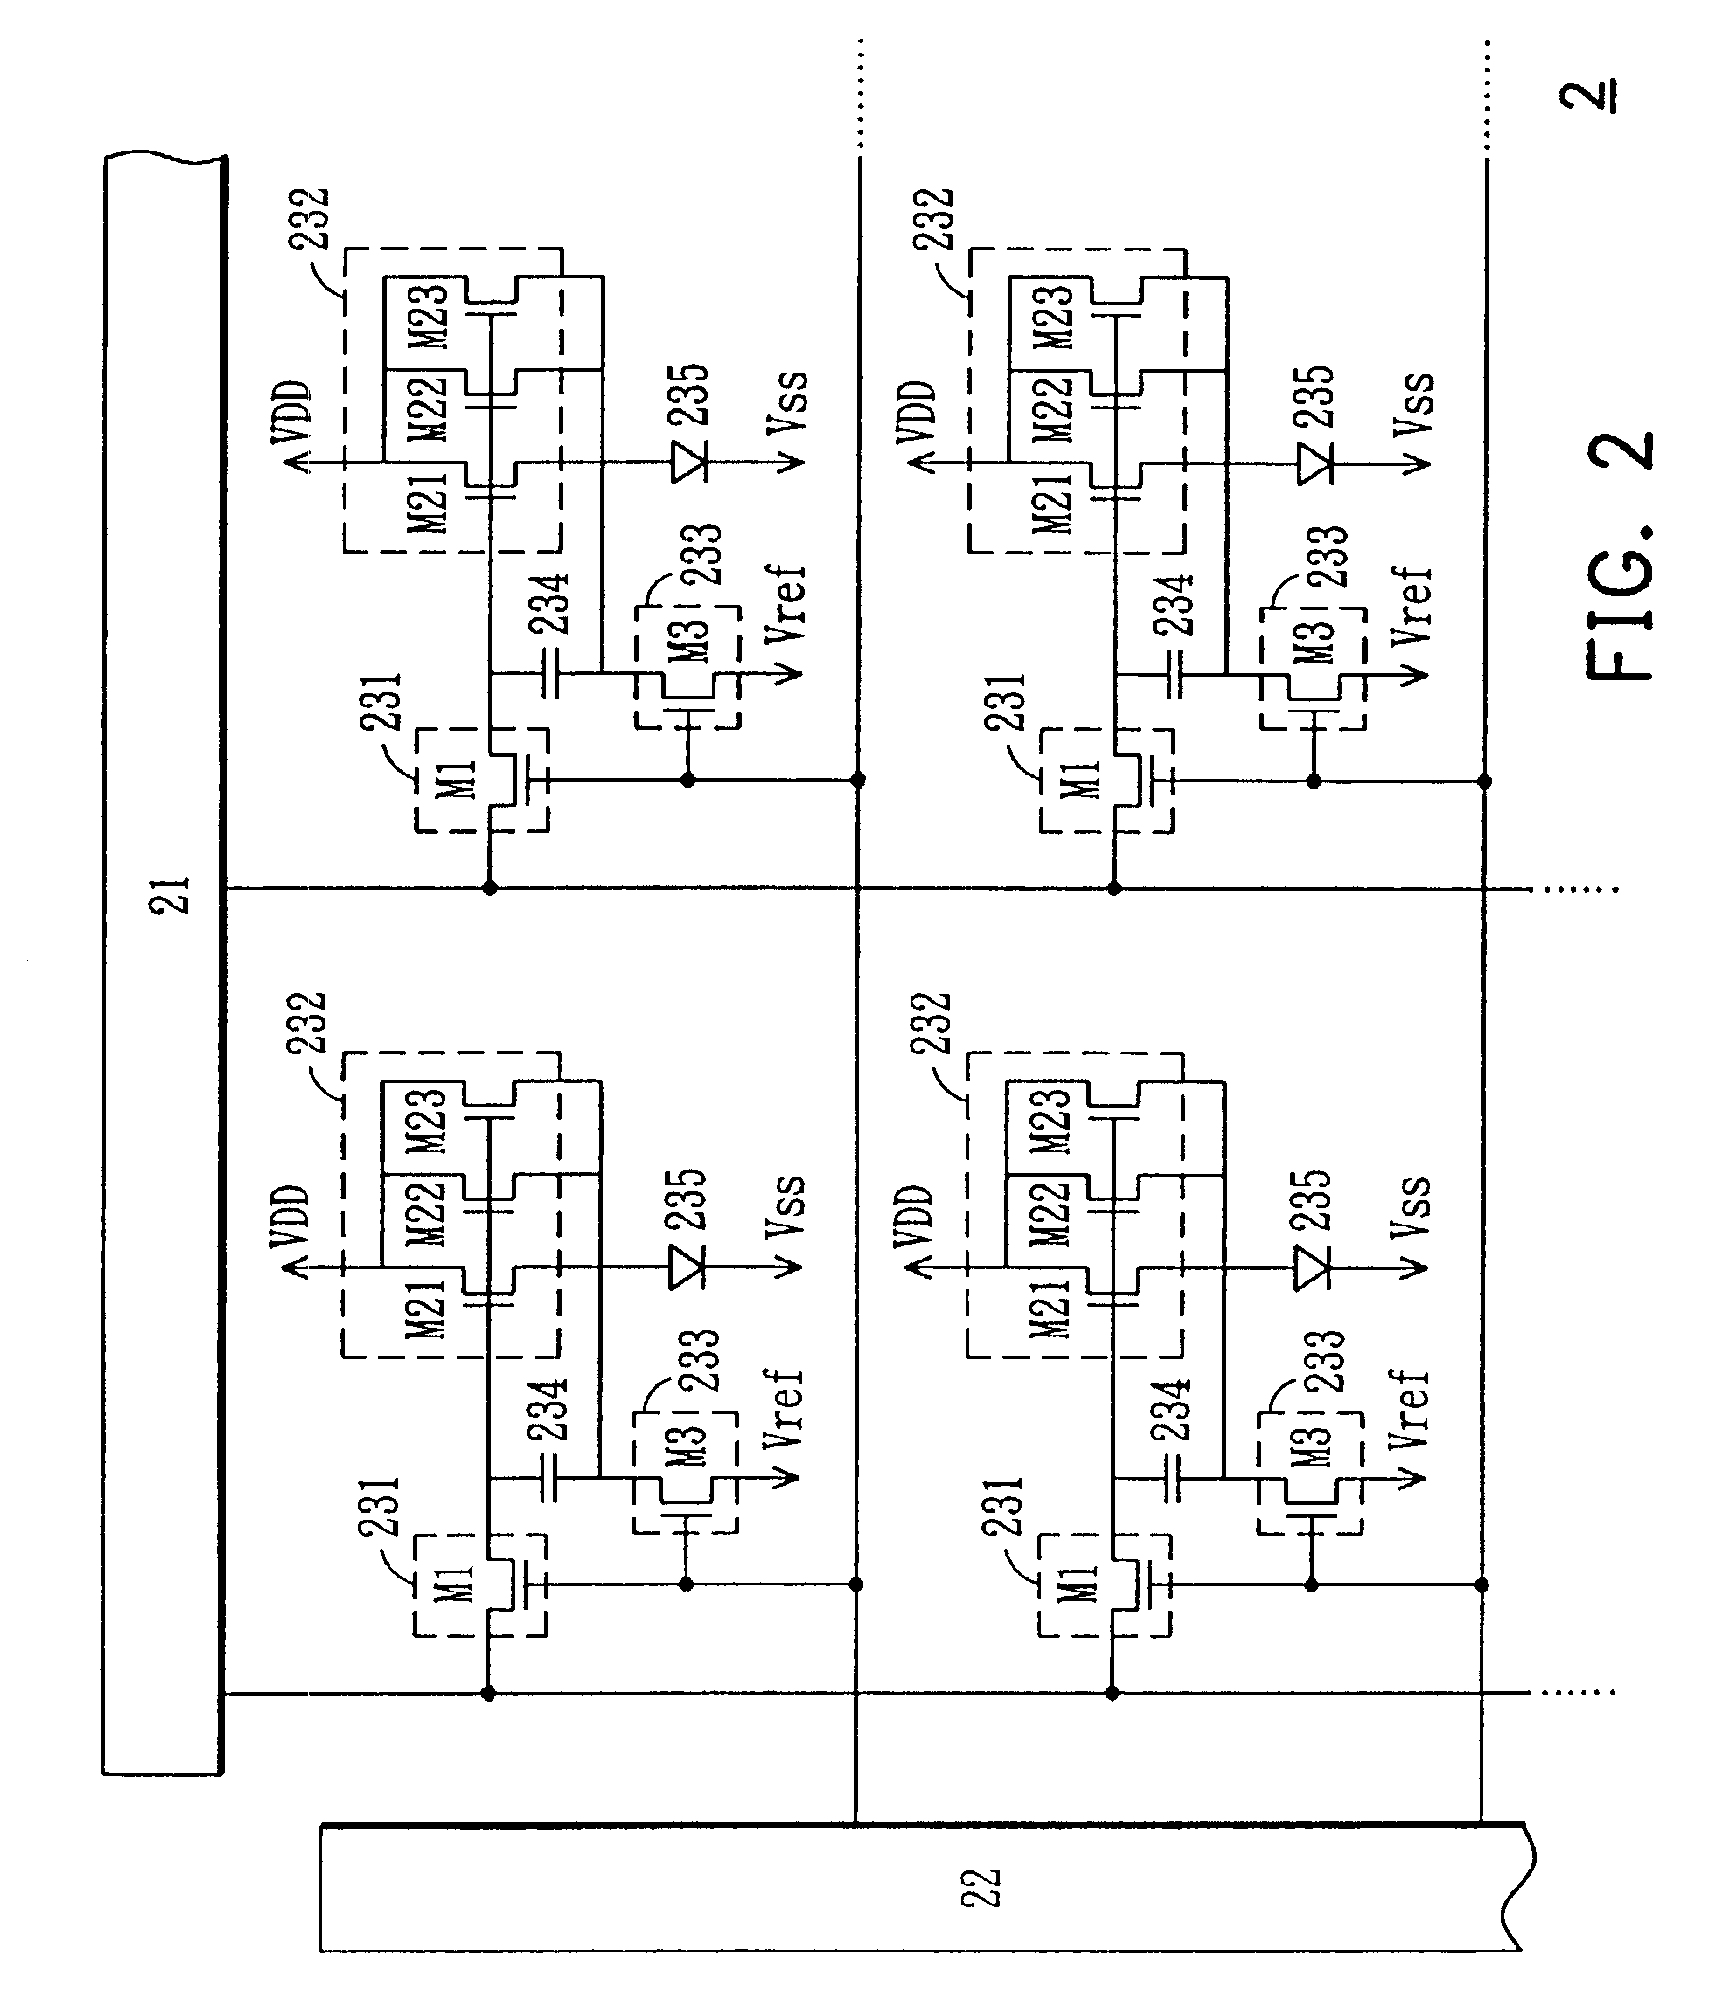 Display driving circuit